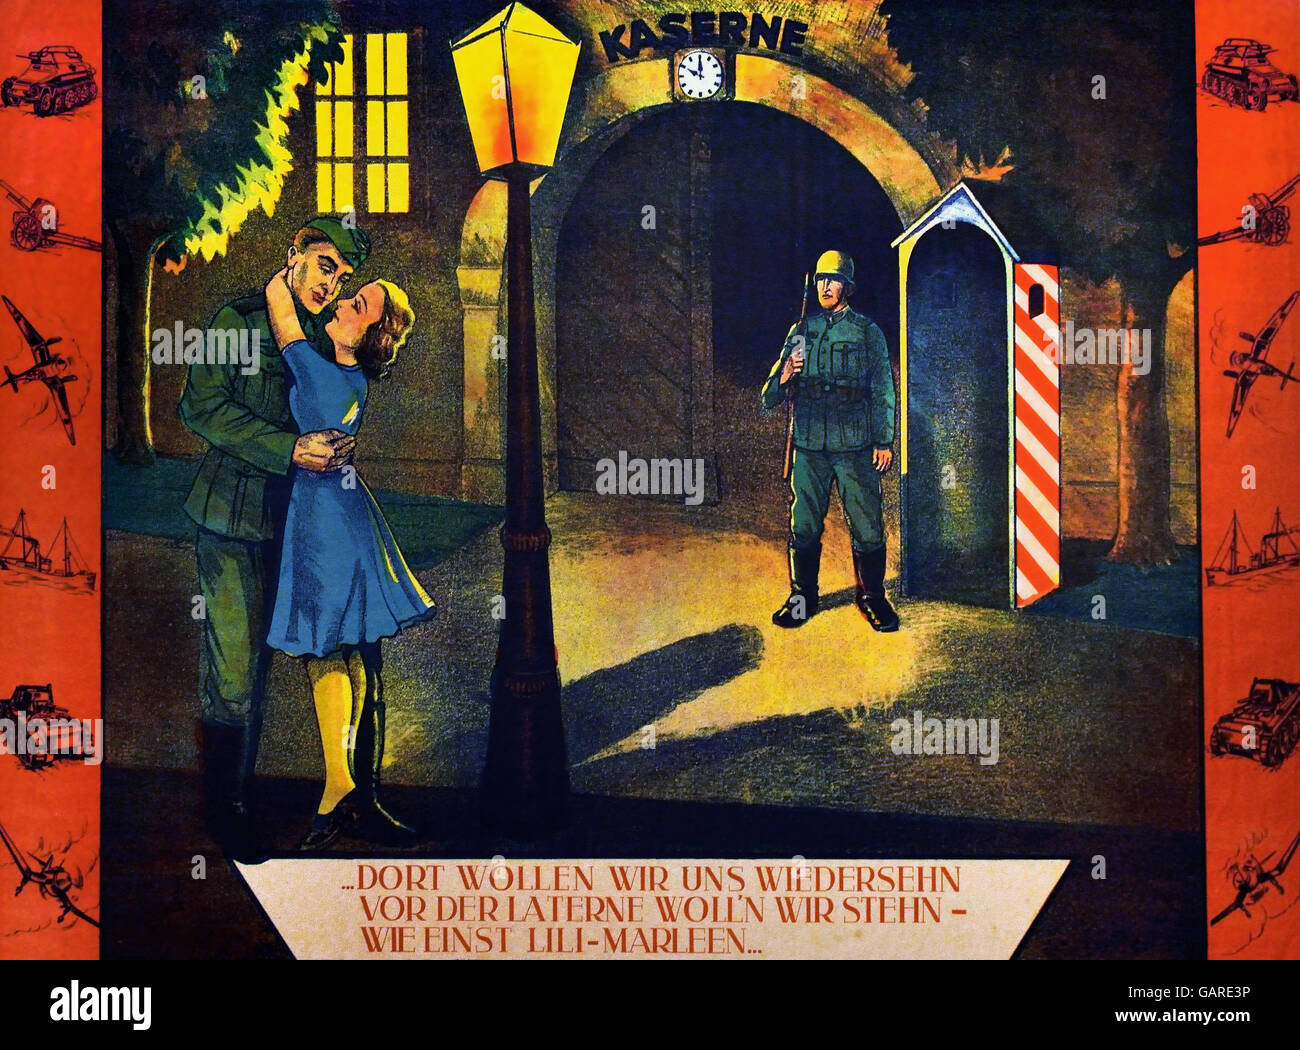 Poster per la canzone Lili Marleen 1941 / 1944 Berlino Germania Nazista ( Lili Marleen è un tedesco love song che divenne popolare durante la II Guerra Mondiale in tutta Europa e Mediterraneo tra entrambi gli assi e le truppe alleate. ) Foto Stock